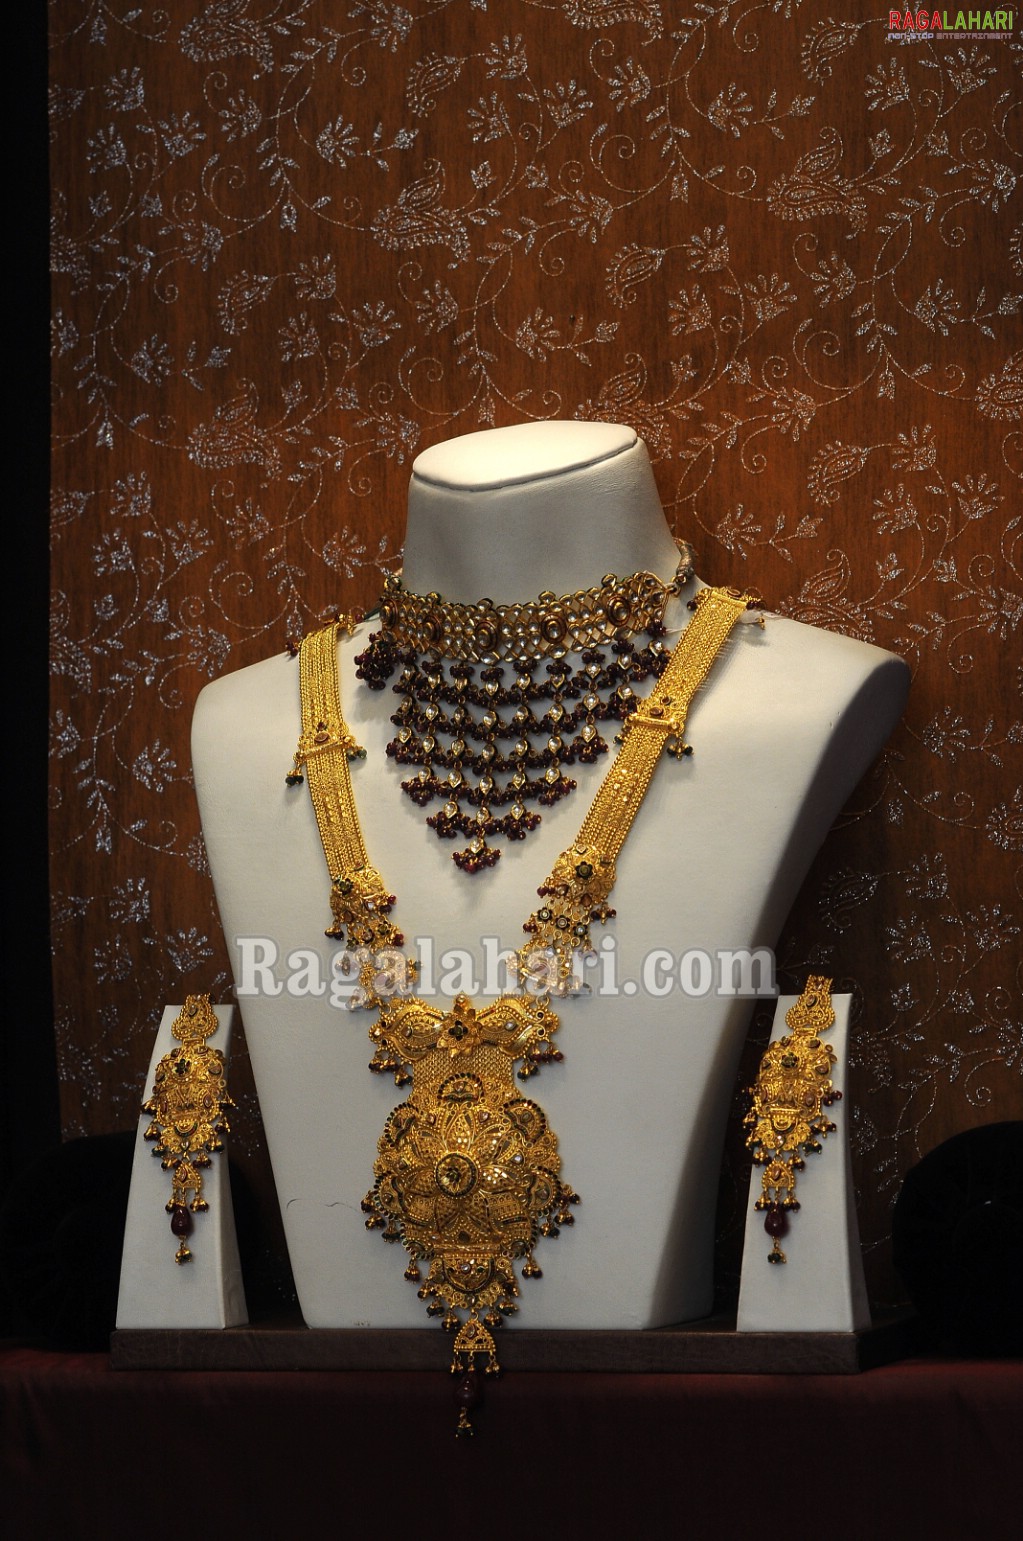 Tanishq Jewellers 'Queen of Diamond 2010' Bumper Draw